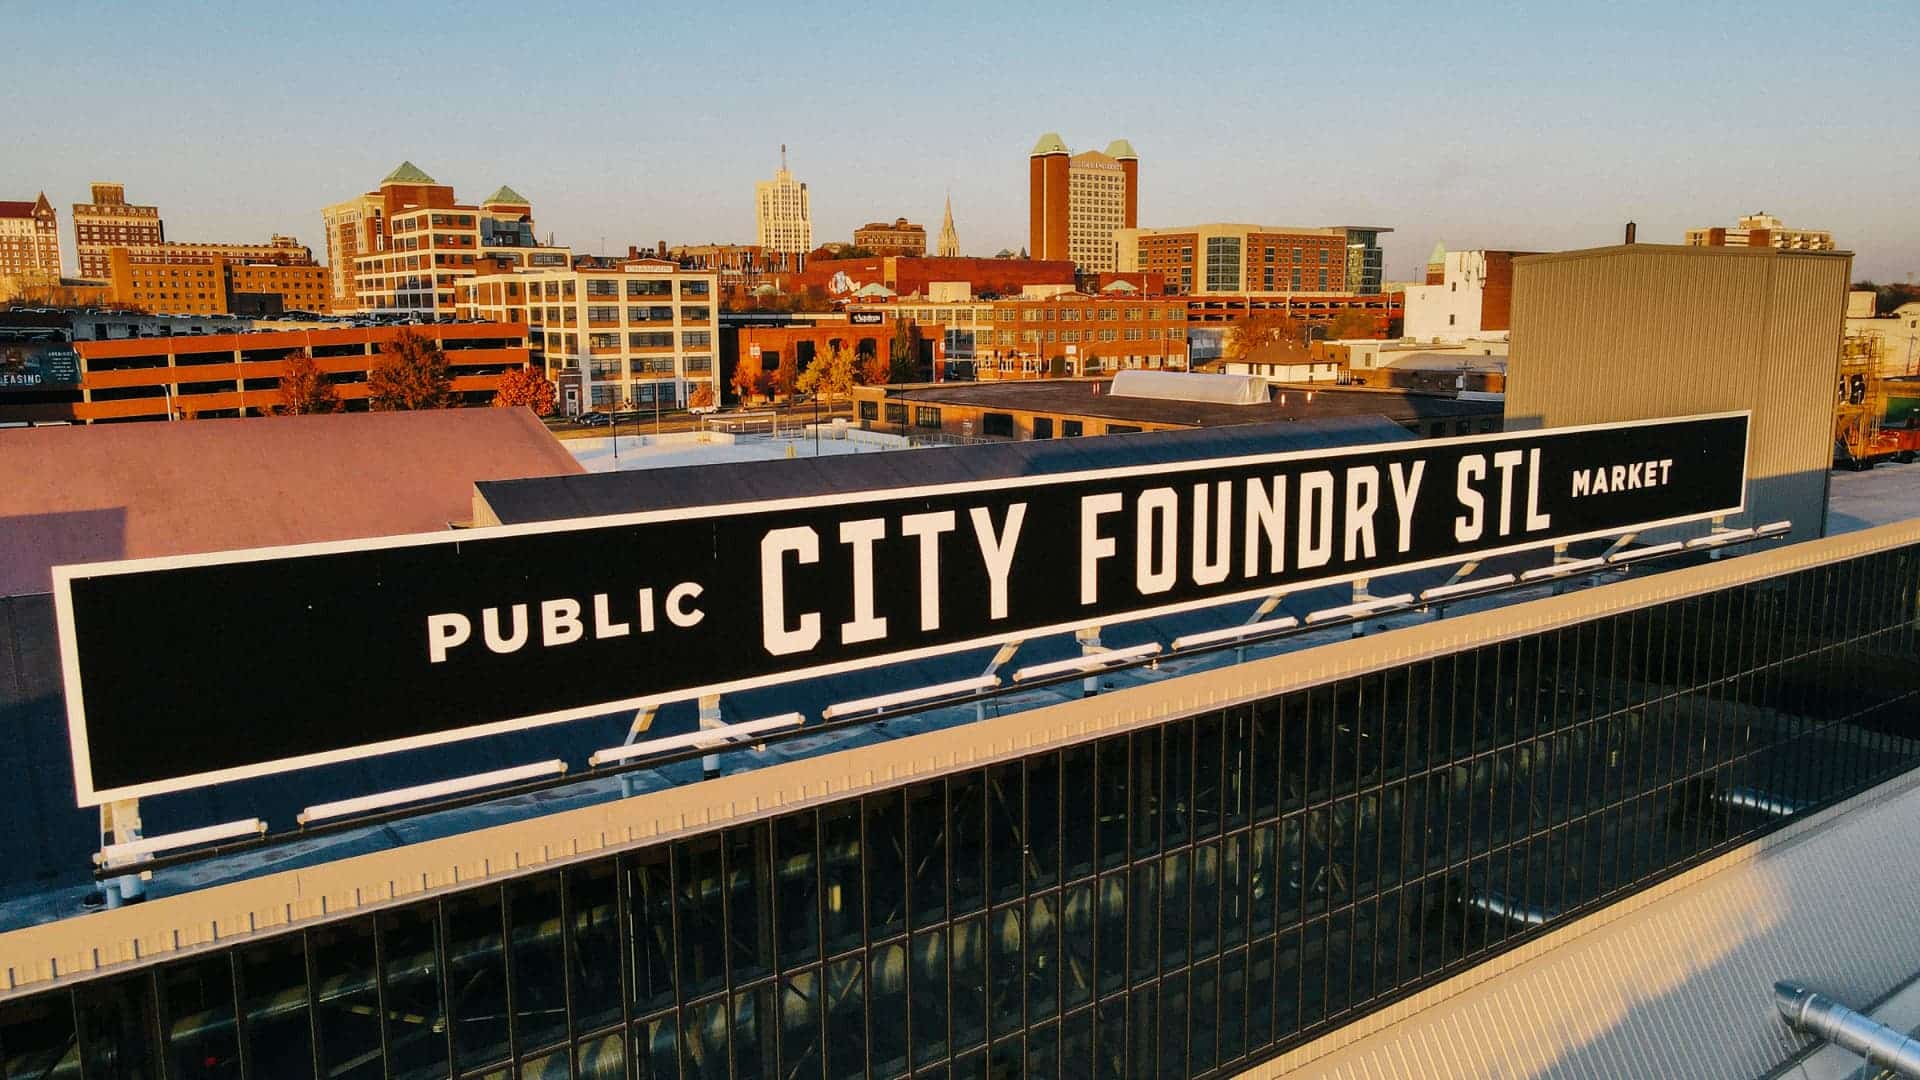 City Foundry - Public Market